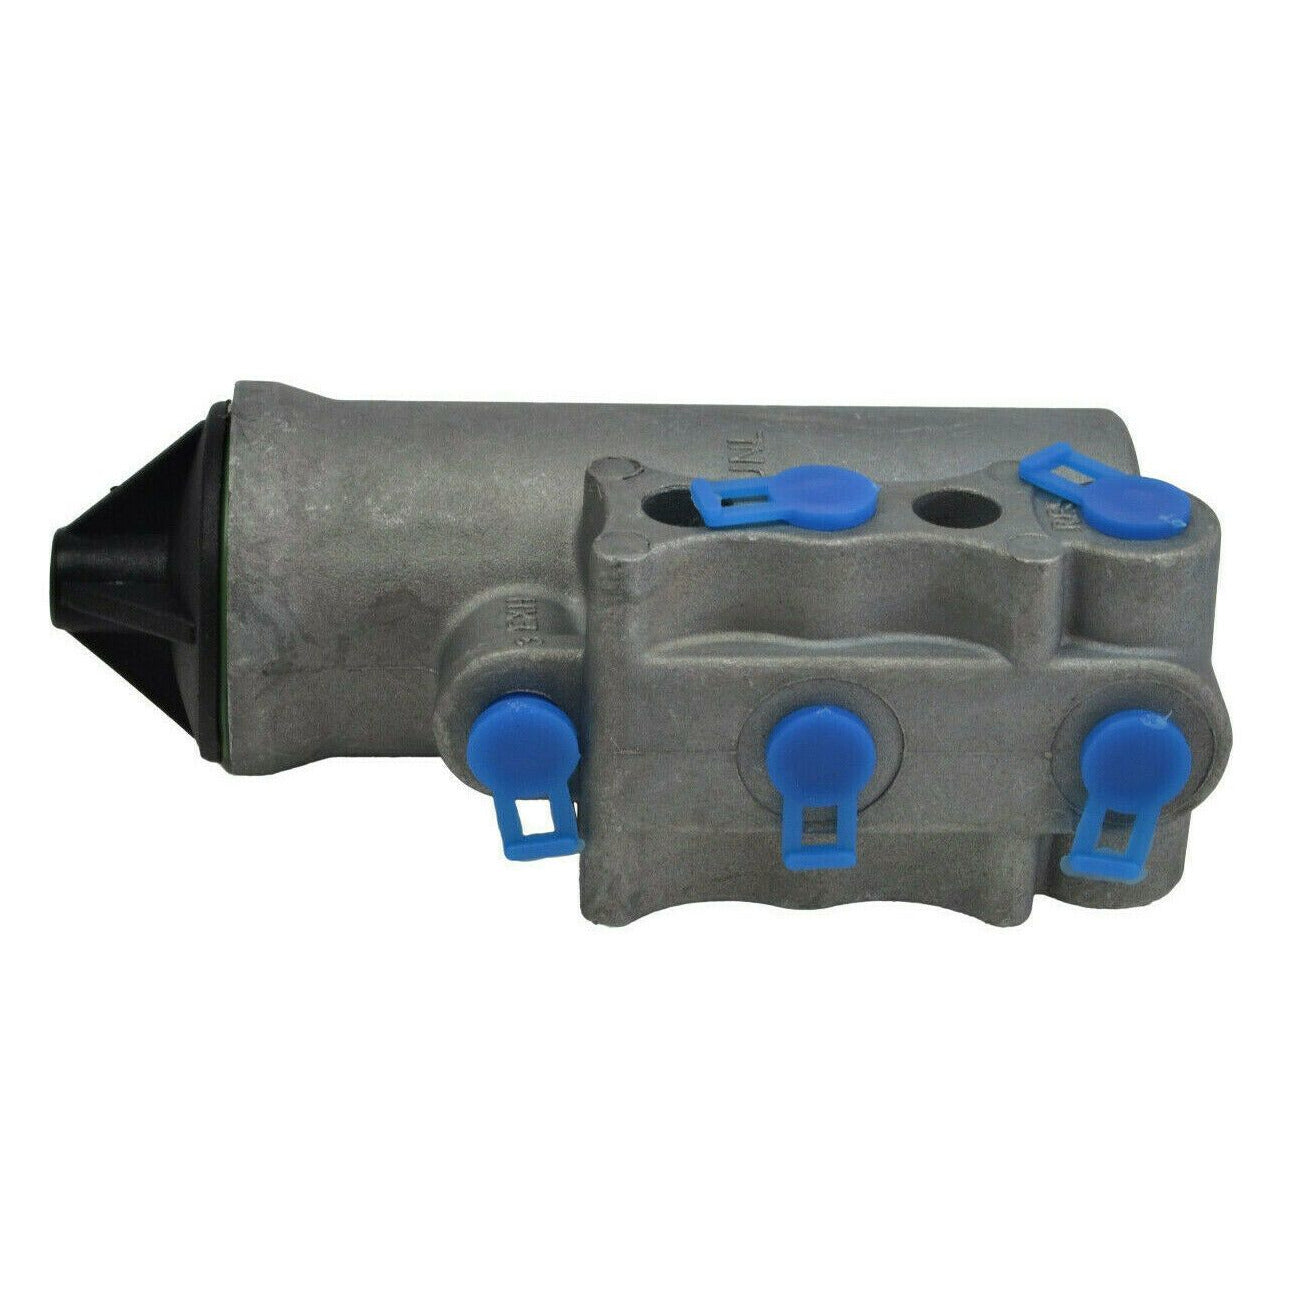 aftermarket D2 governor valve , air brake / system governor valve 105 - 125 PSI